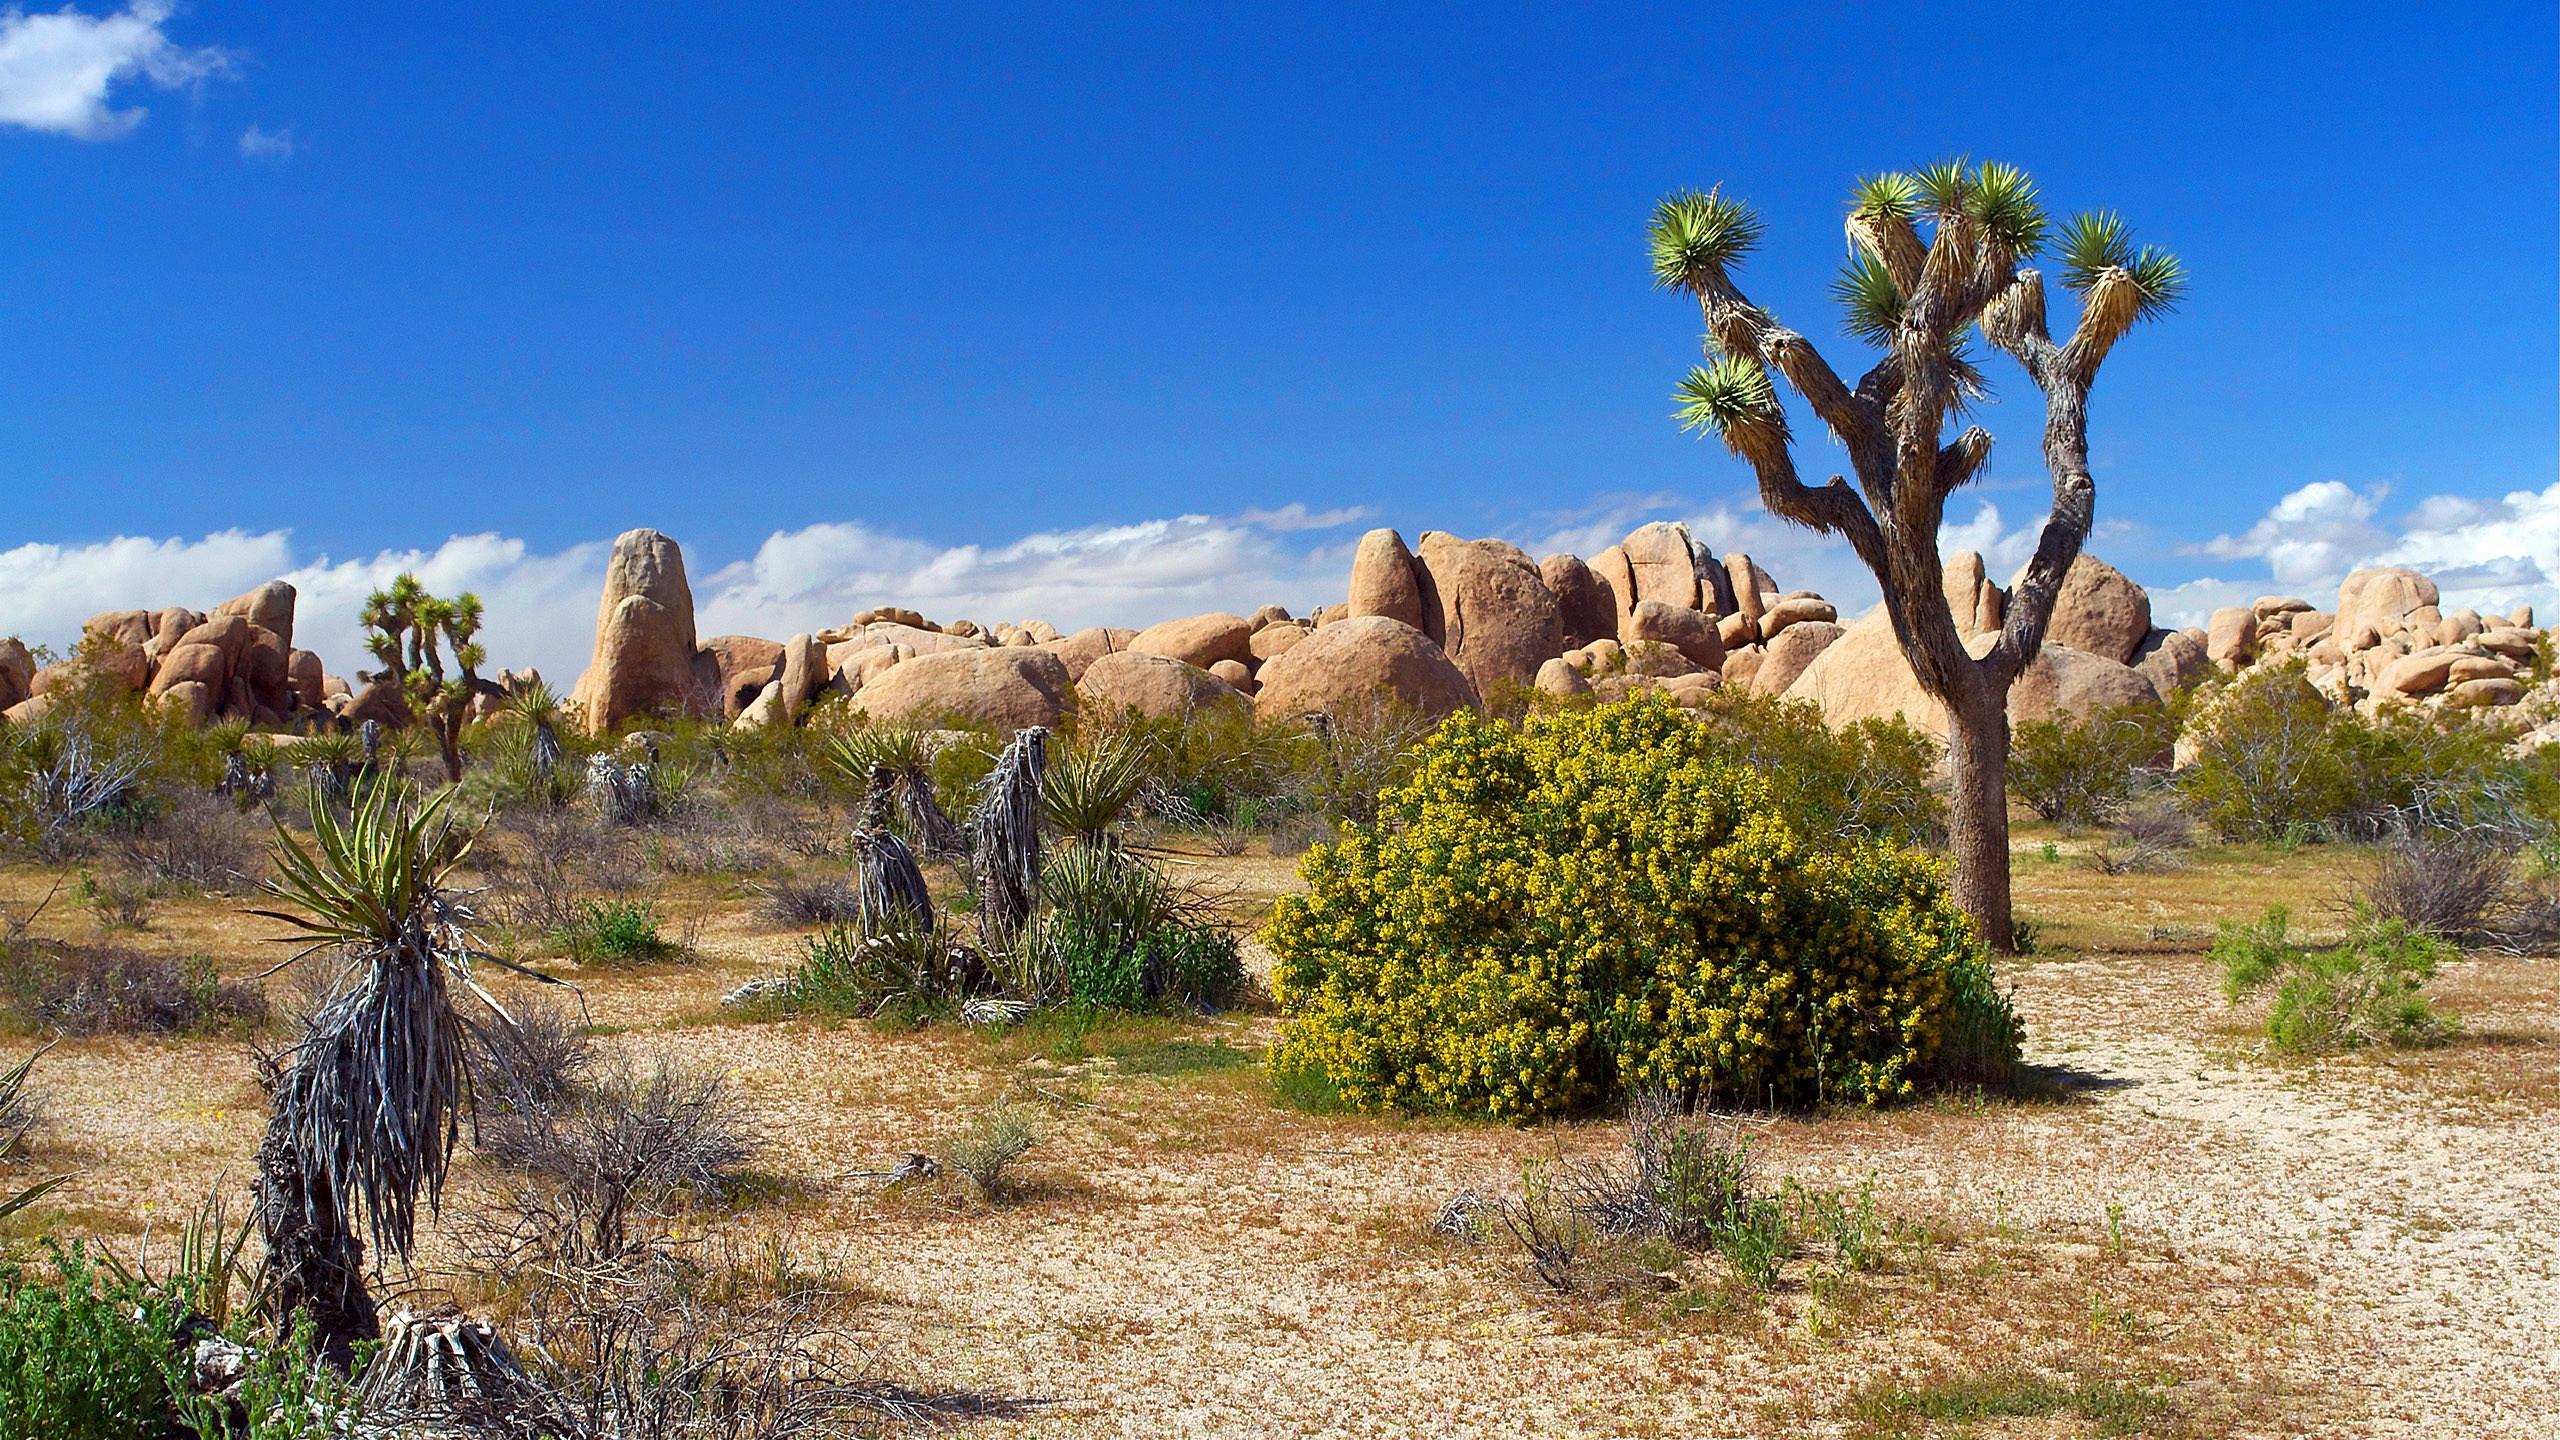 2560 x 1440 · jpeg - Desert Landscape Wallpaper - WallpaperSafari